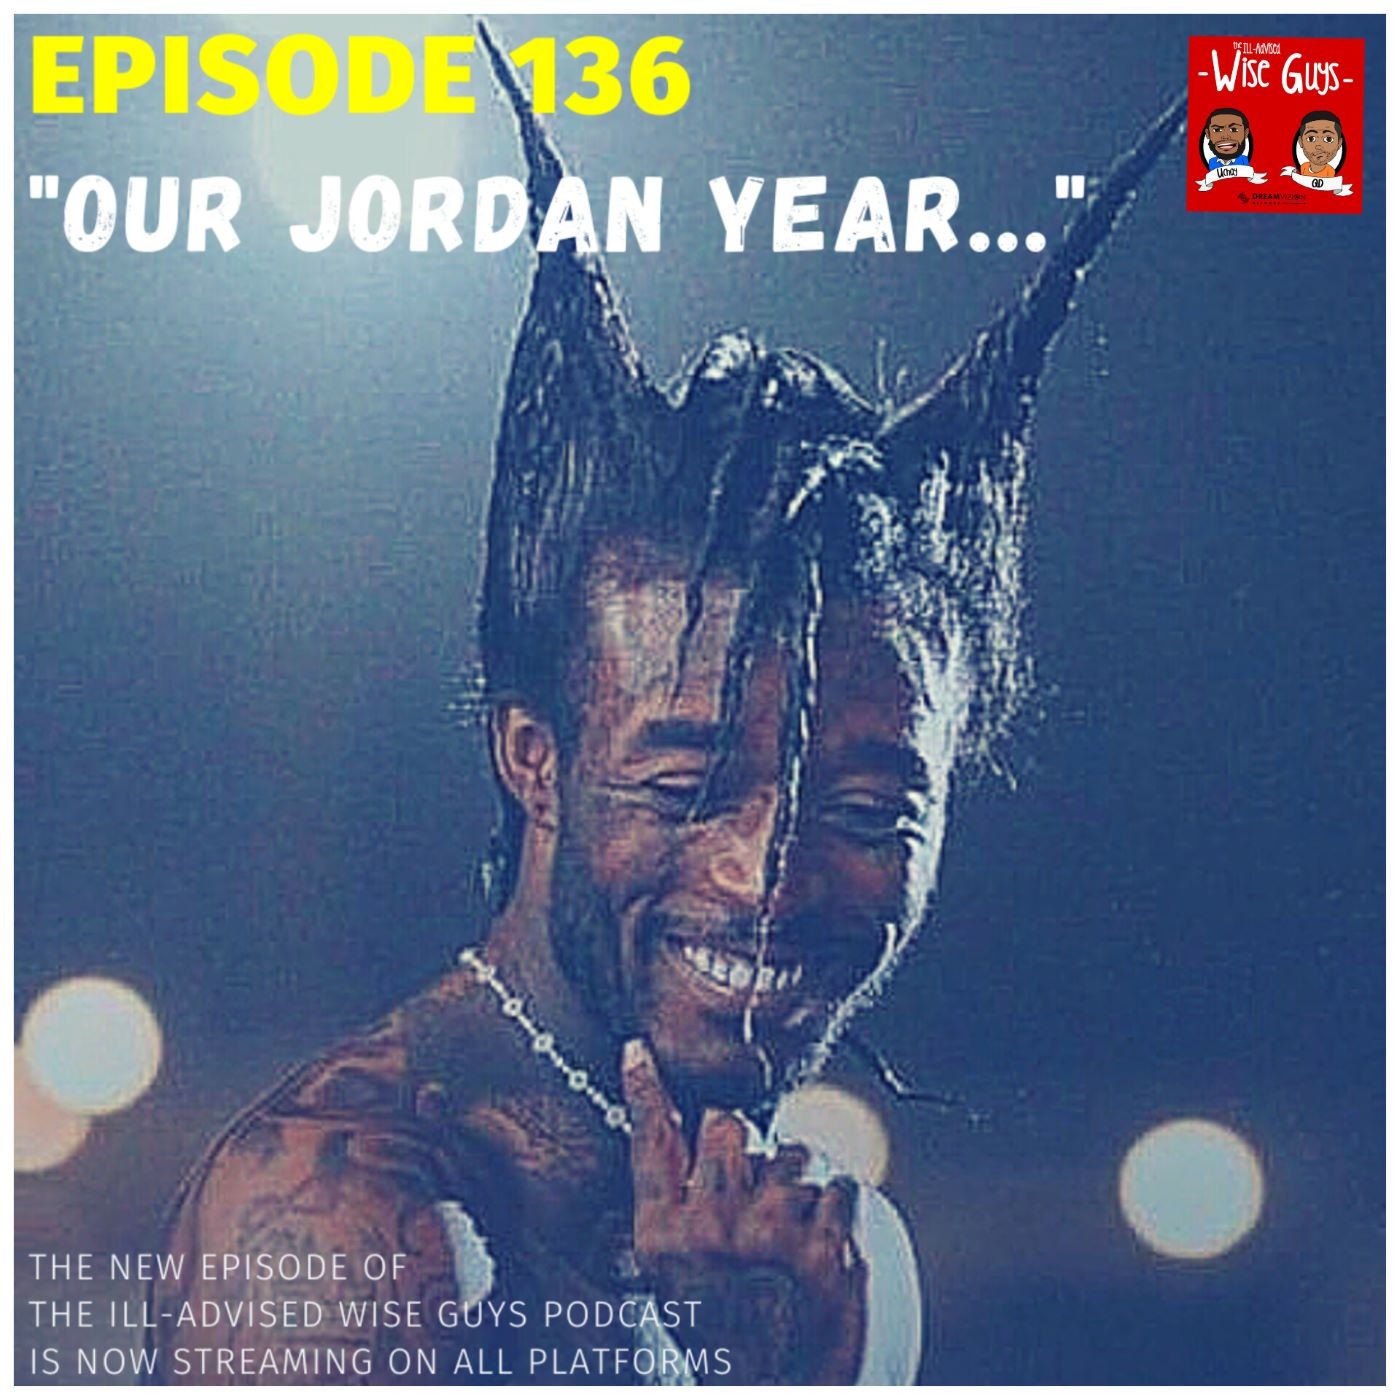 Episode 136 - "Our Jordan Year..." Image